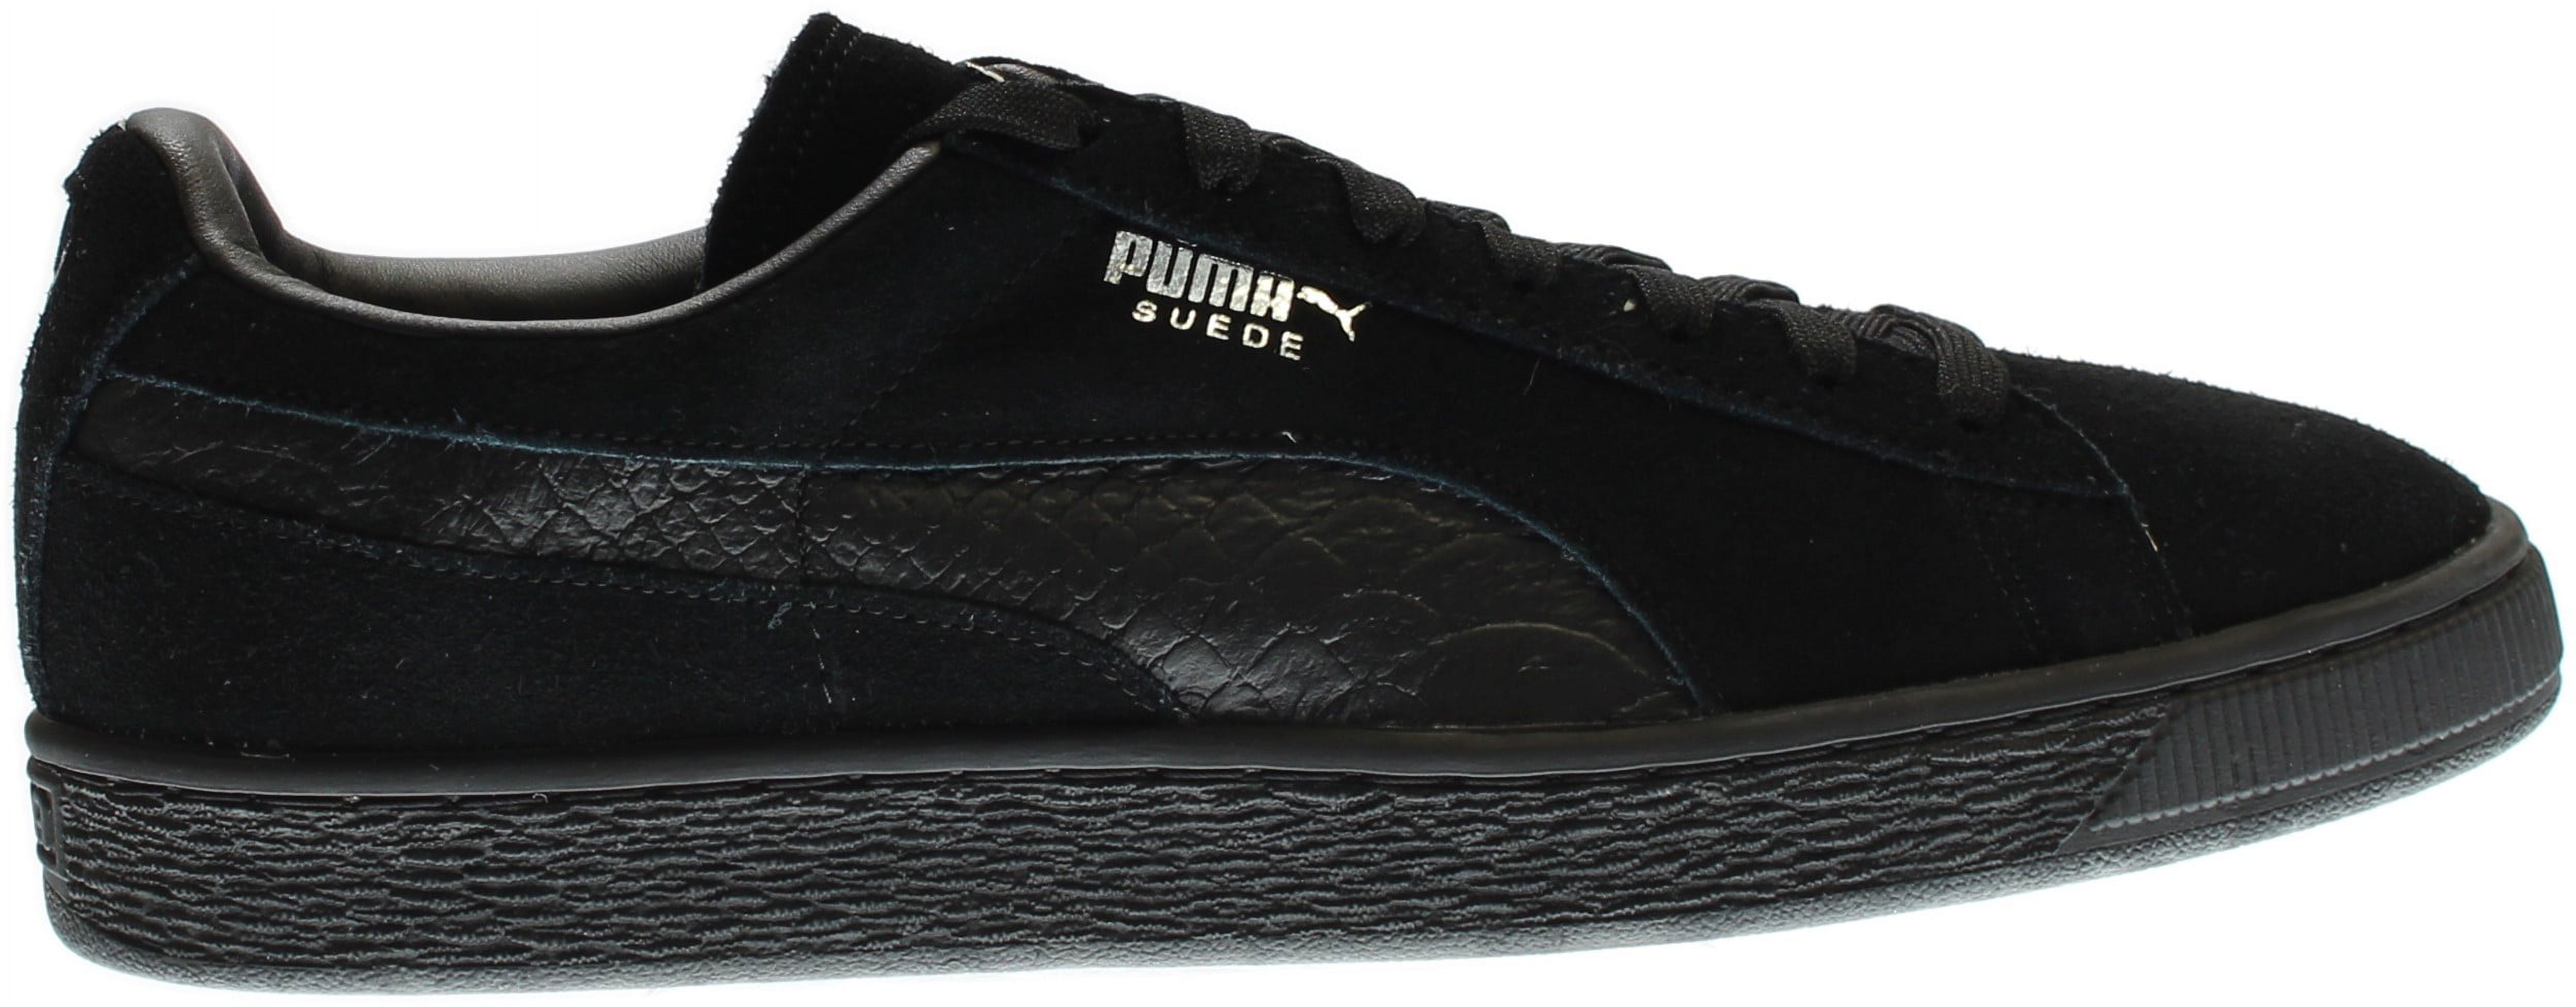 PUMA 363164-06 : Men's Suede Classic Mono Reptile Fashion Sneaker, Black (Puma Black-puma Silv, 9 D(M) US) - image 2 of 7